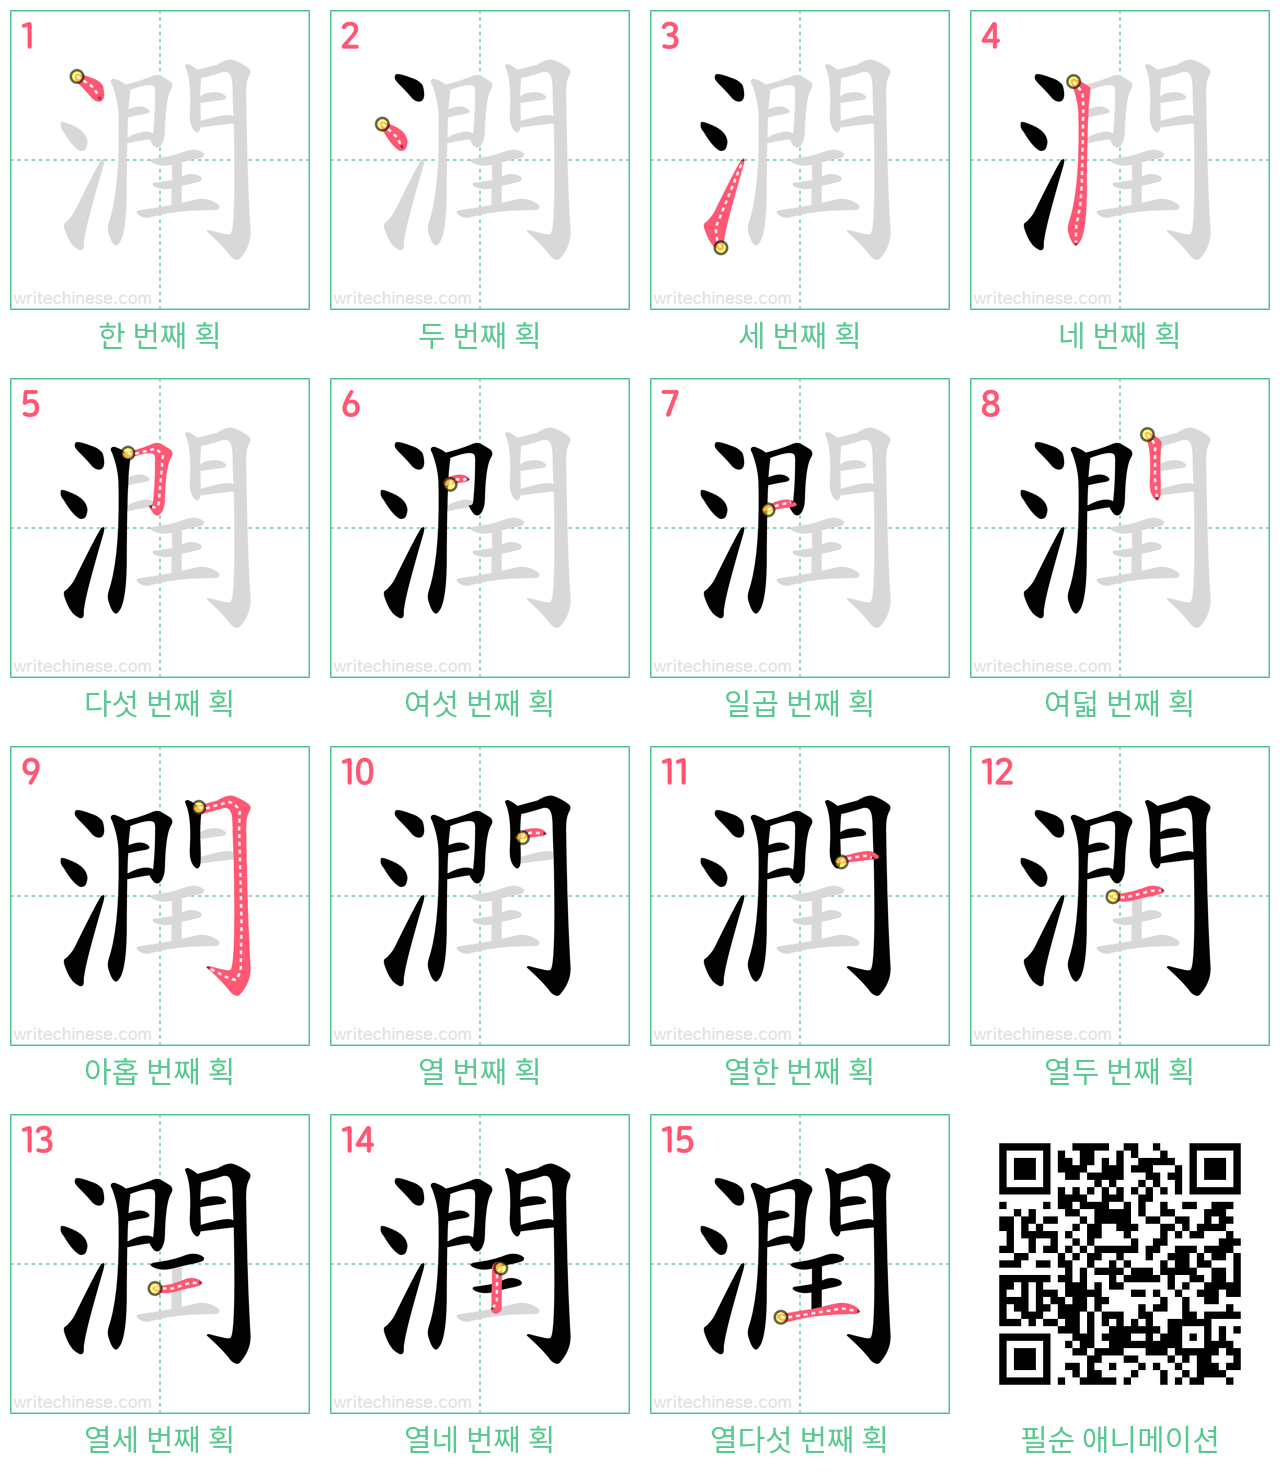 潤 step-by-step stroke order diagrams